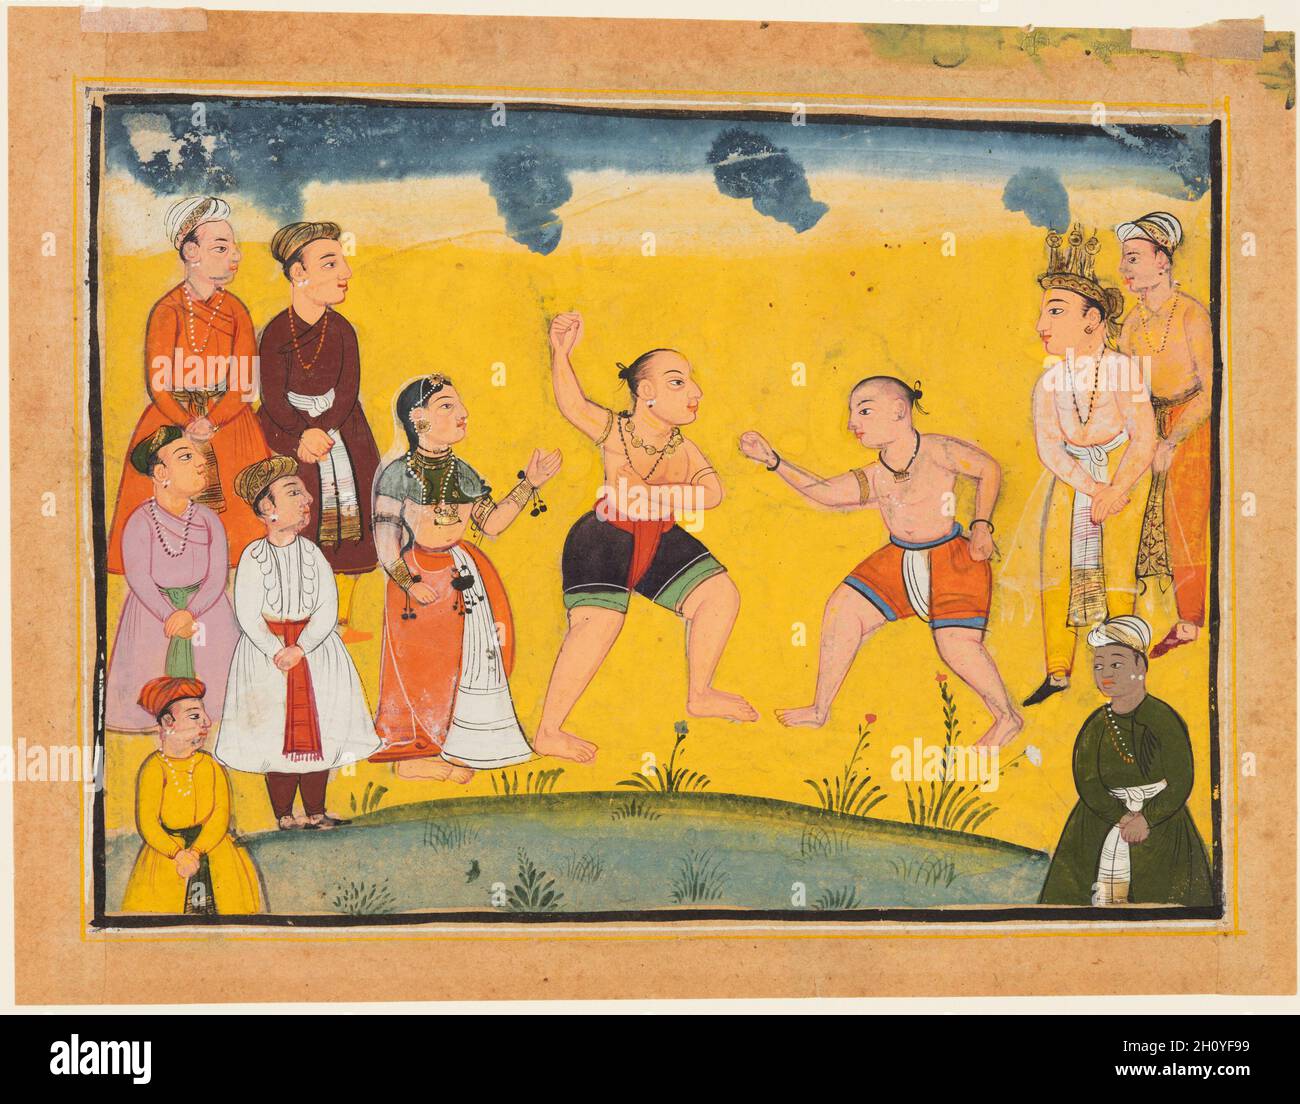 Draupadi gerettet vor Entführung, aus einem Mahabharata, c. 1615. Nordindien, populäre Mughal Schule, vermutlich getan an Bikaner. Gummitemperatur, Tinte und Gold auf Papier; Seite: 14.6 x 19.4 cm (5 3/4 x 7 5/8 Zoll); Miniatur: 11.2 x 16.5 cm (4 7/16 x 6 1/2 Zoll). Bhima und Jayadrath, gekleidet wie Ringer, duellieren sich, während seine vier Brüder (Pandavas) und ihre edlen Begleiter zuschauen. Bhima scheint der größere Wrestler zu sein und trägt eine Kette von Glocken, und Jayadratha trägt einen orangefarbenen Lendenschurz. Draupadi steht hinter Bhima und wird bereits aus Jayadrathas Klauen gerettet. Stockfoto